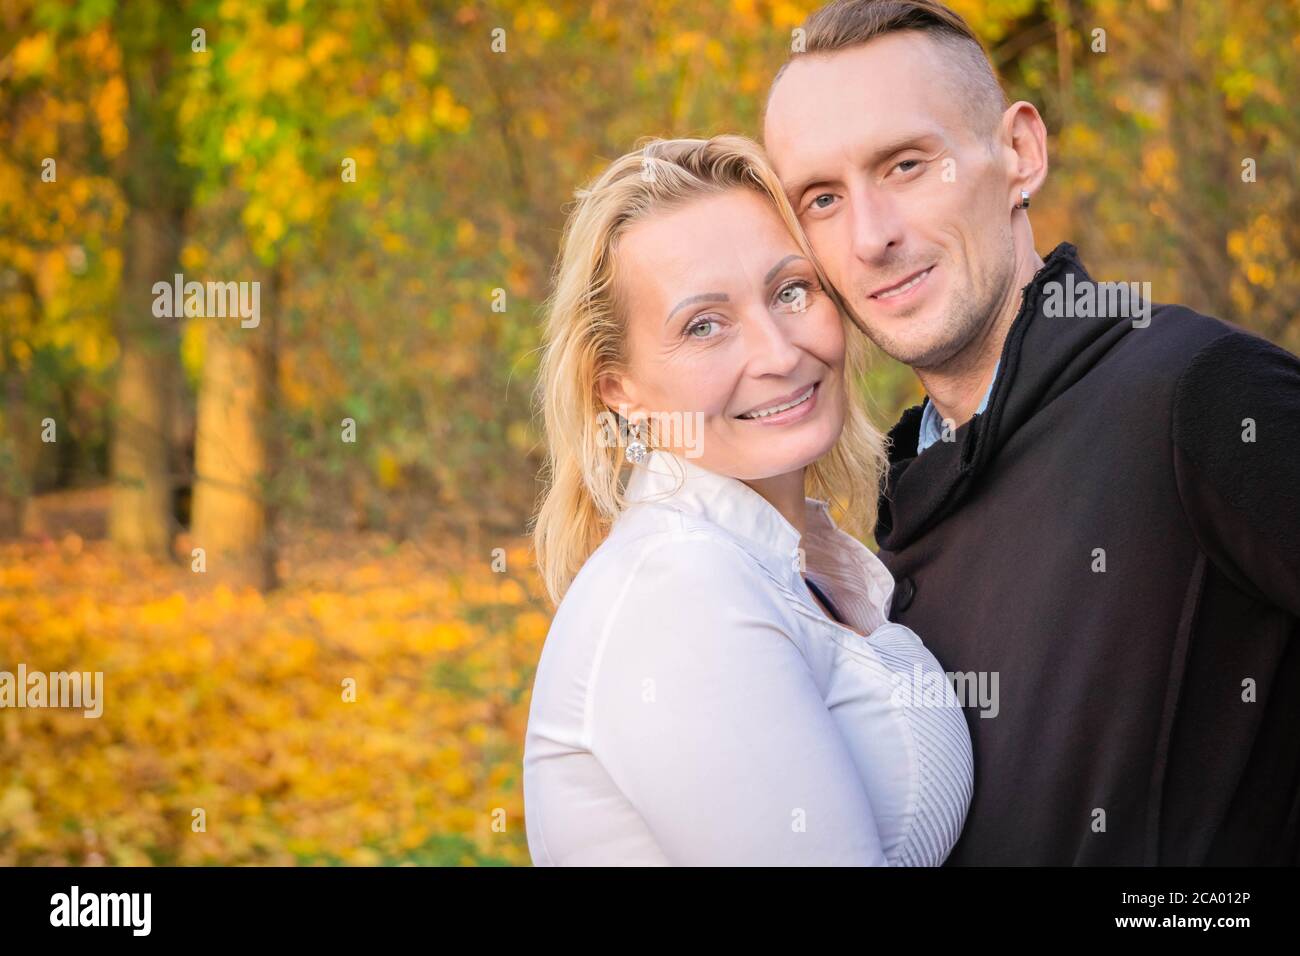 Schönes Paar mittleren Alters im Herbstpark. Lächelnder Mann und Frau umarmten sich vor dem Hintergrund des Sturzes. Pärchen Spaß im bunten Herbstpark. Glückliches Paar auf fa Stockfoto